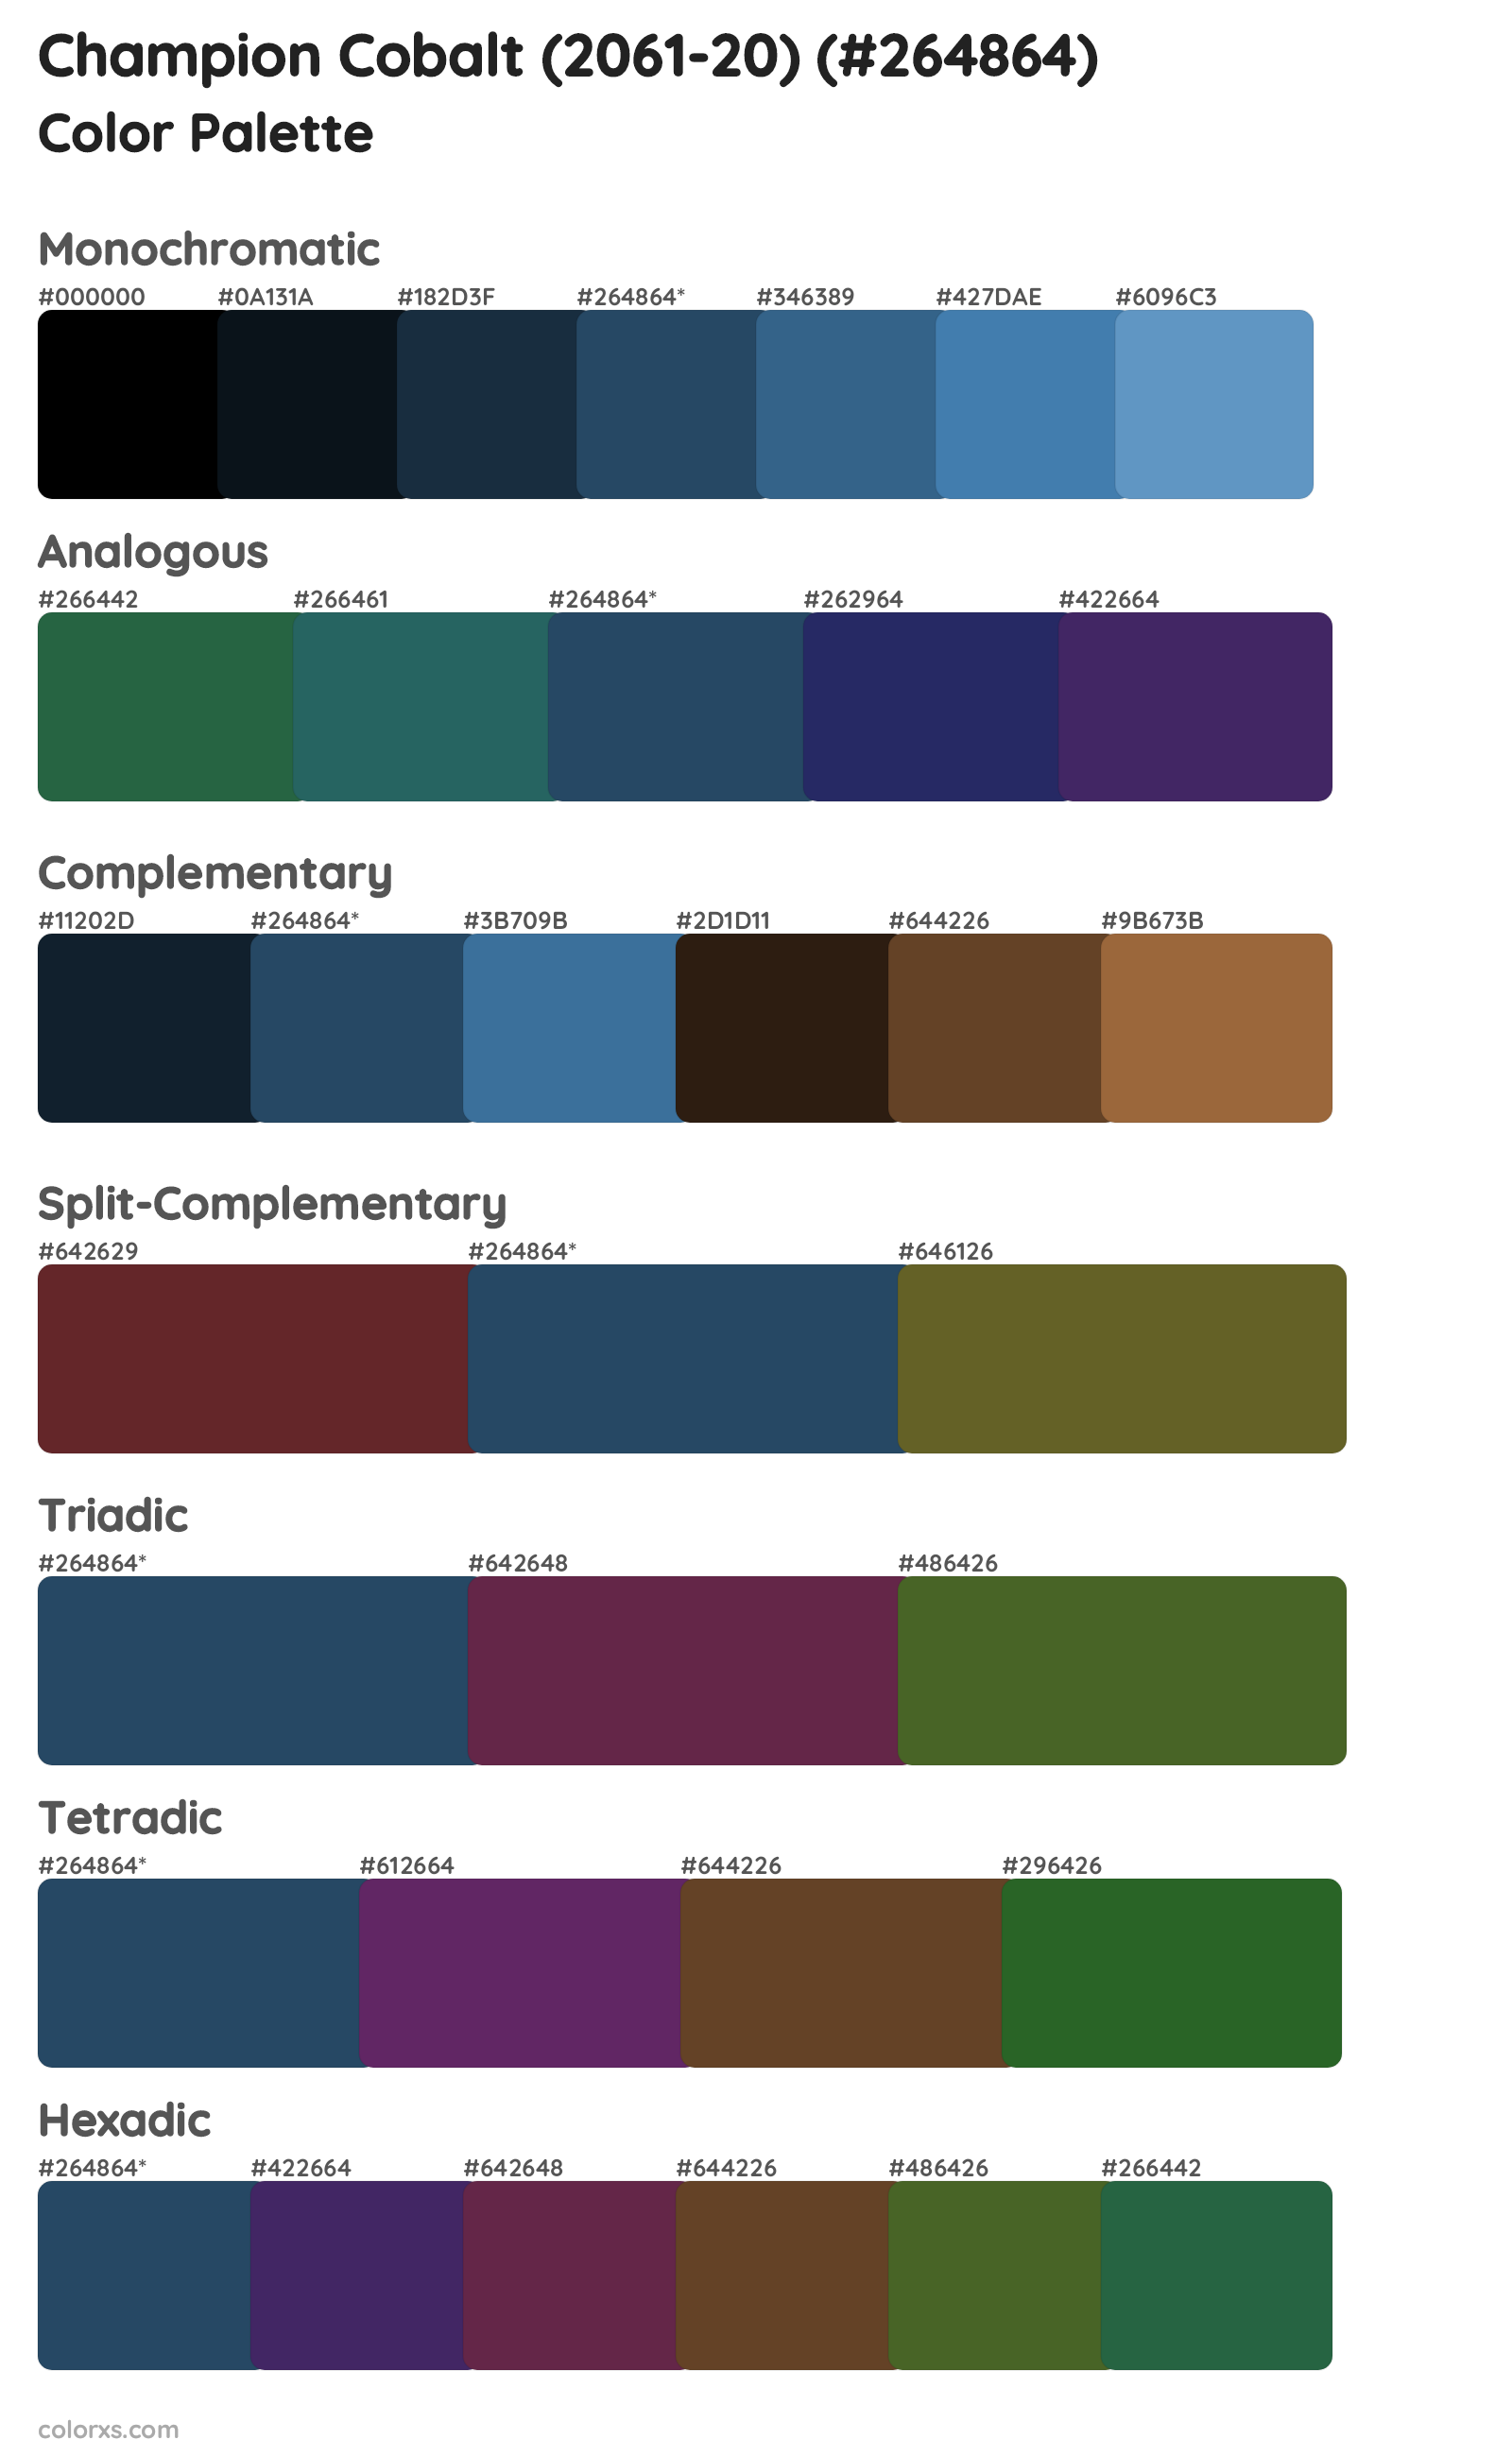 Champion Cobalt (2061-20) Color Scheme Palettes